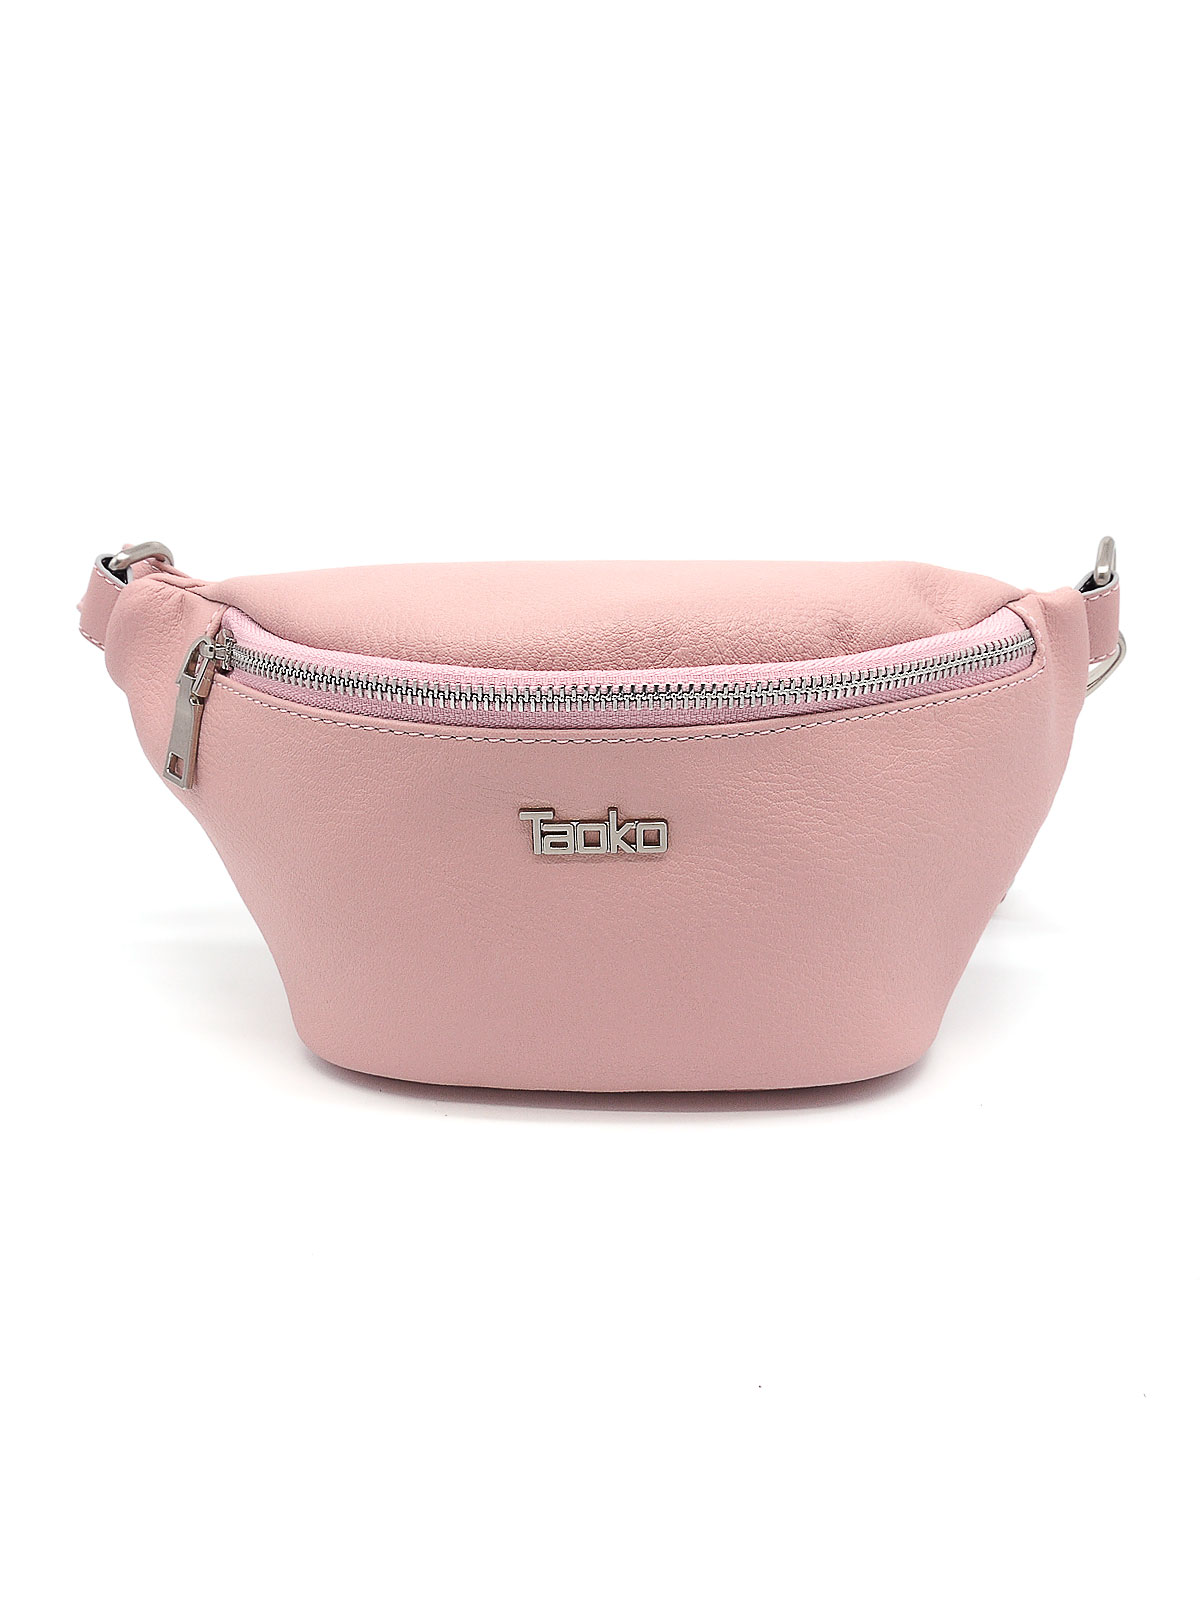 Поясная сумка женская Taoko Tanishi 4332, розовый